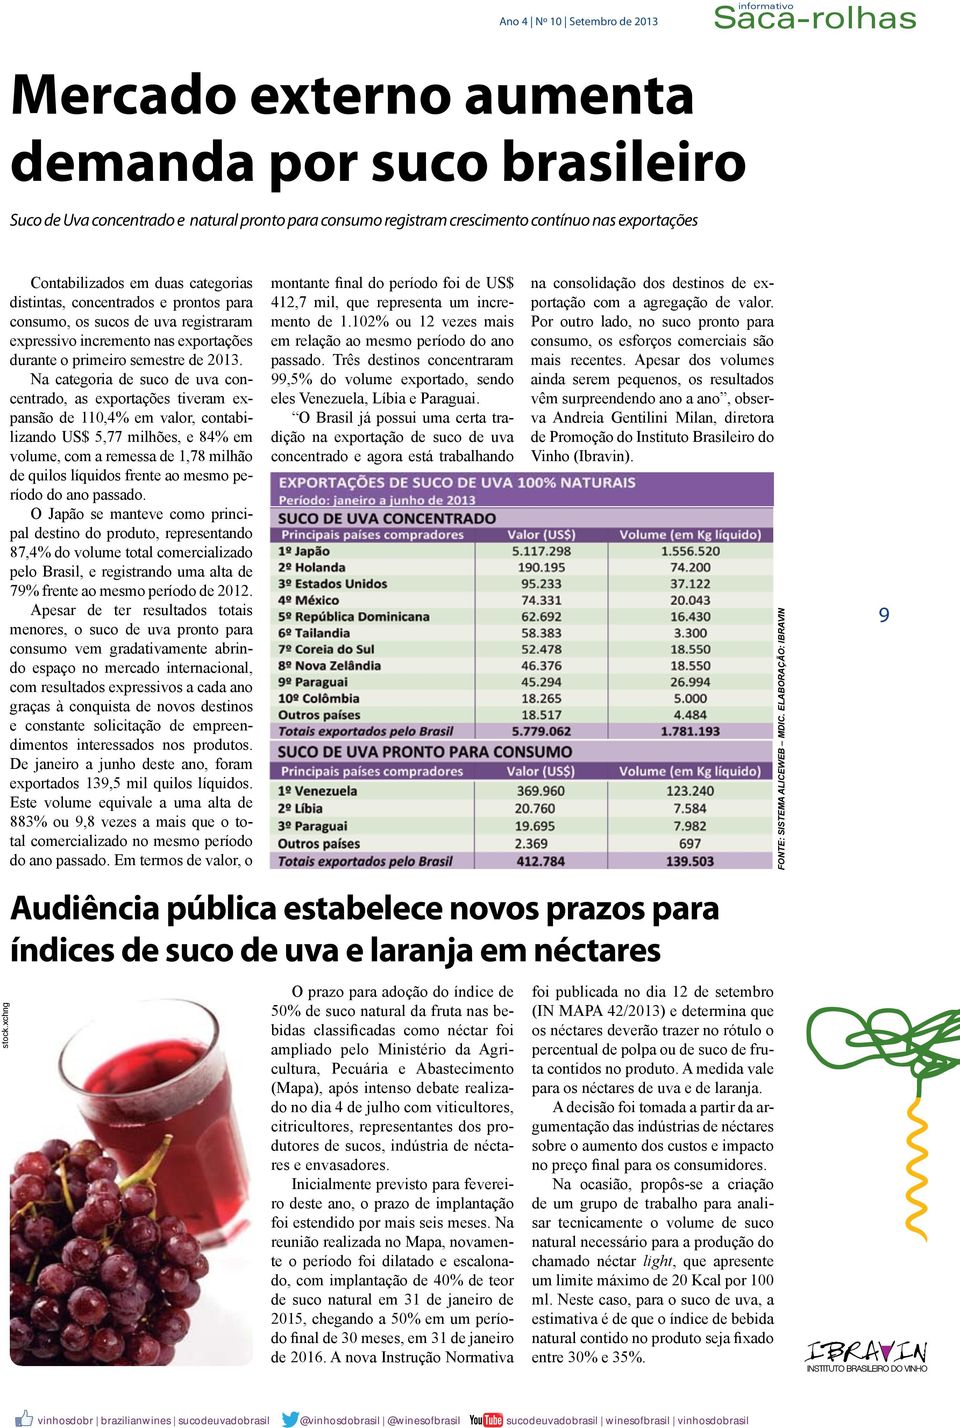 Na categoria de suco de uva concentrado, as exportações tiveram expansão de 110,4% em valor, contabilizando US$ 5,77 milhões, e 84% em volume, com a remessa de 1,78 milhão de quilos líquidos frente